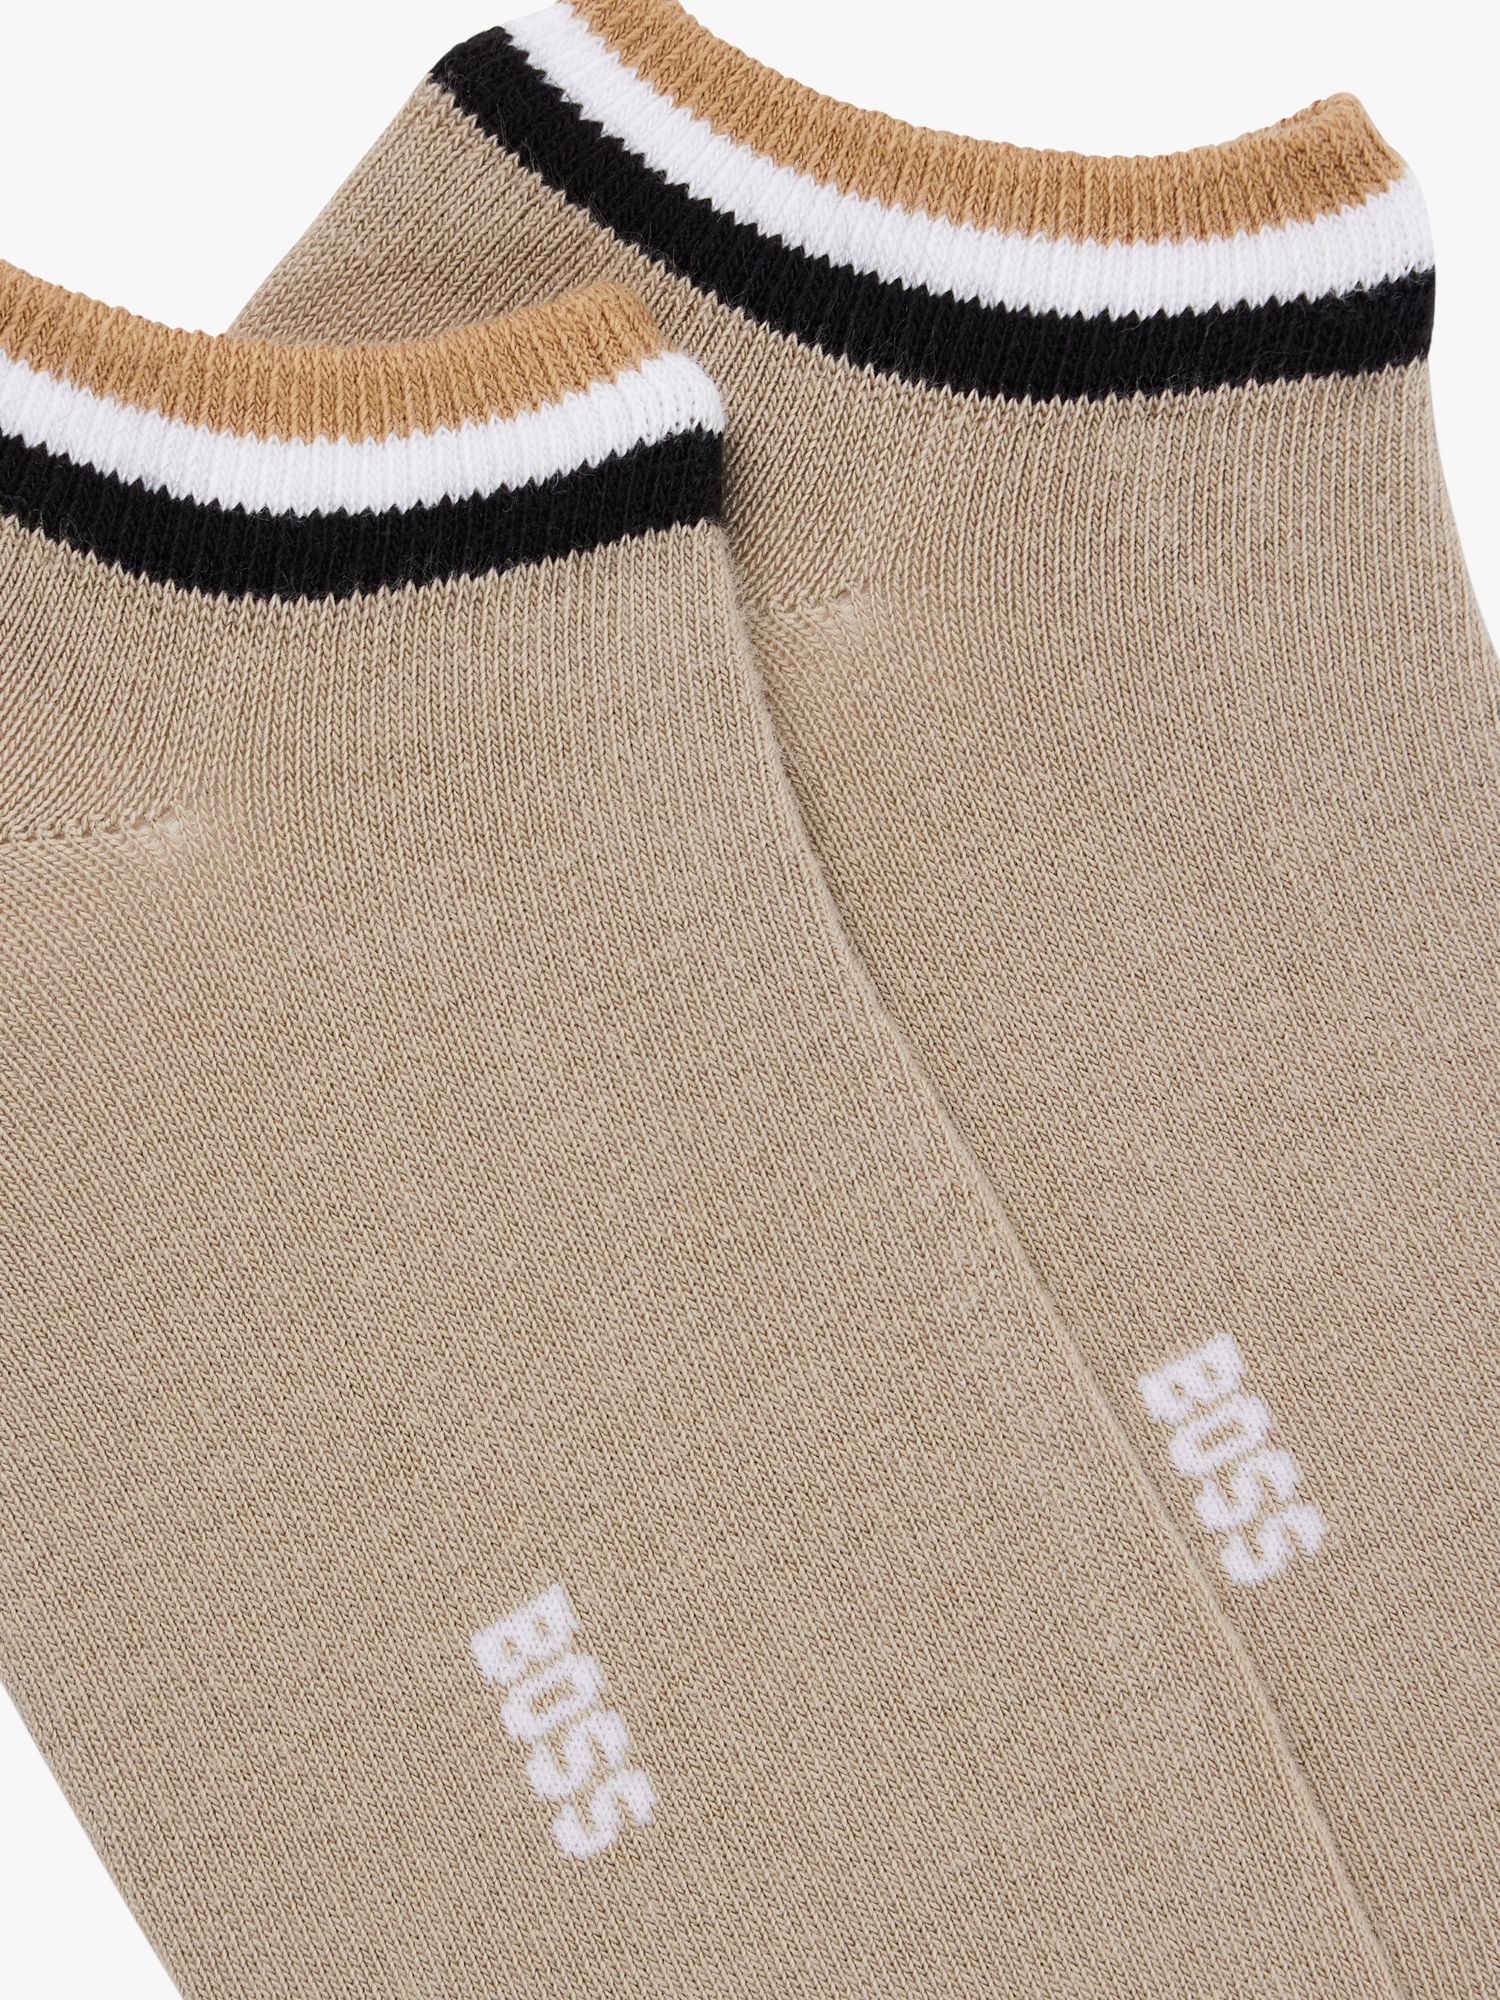 HUGO BOSS BOSS Iconic Stripe Design Ankle Socks, Pack of 2, Dark Beige, S-M